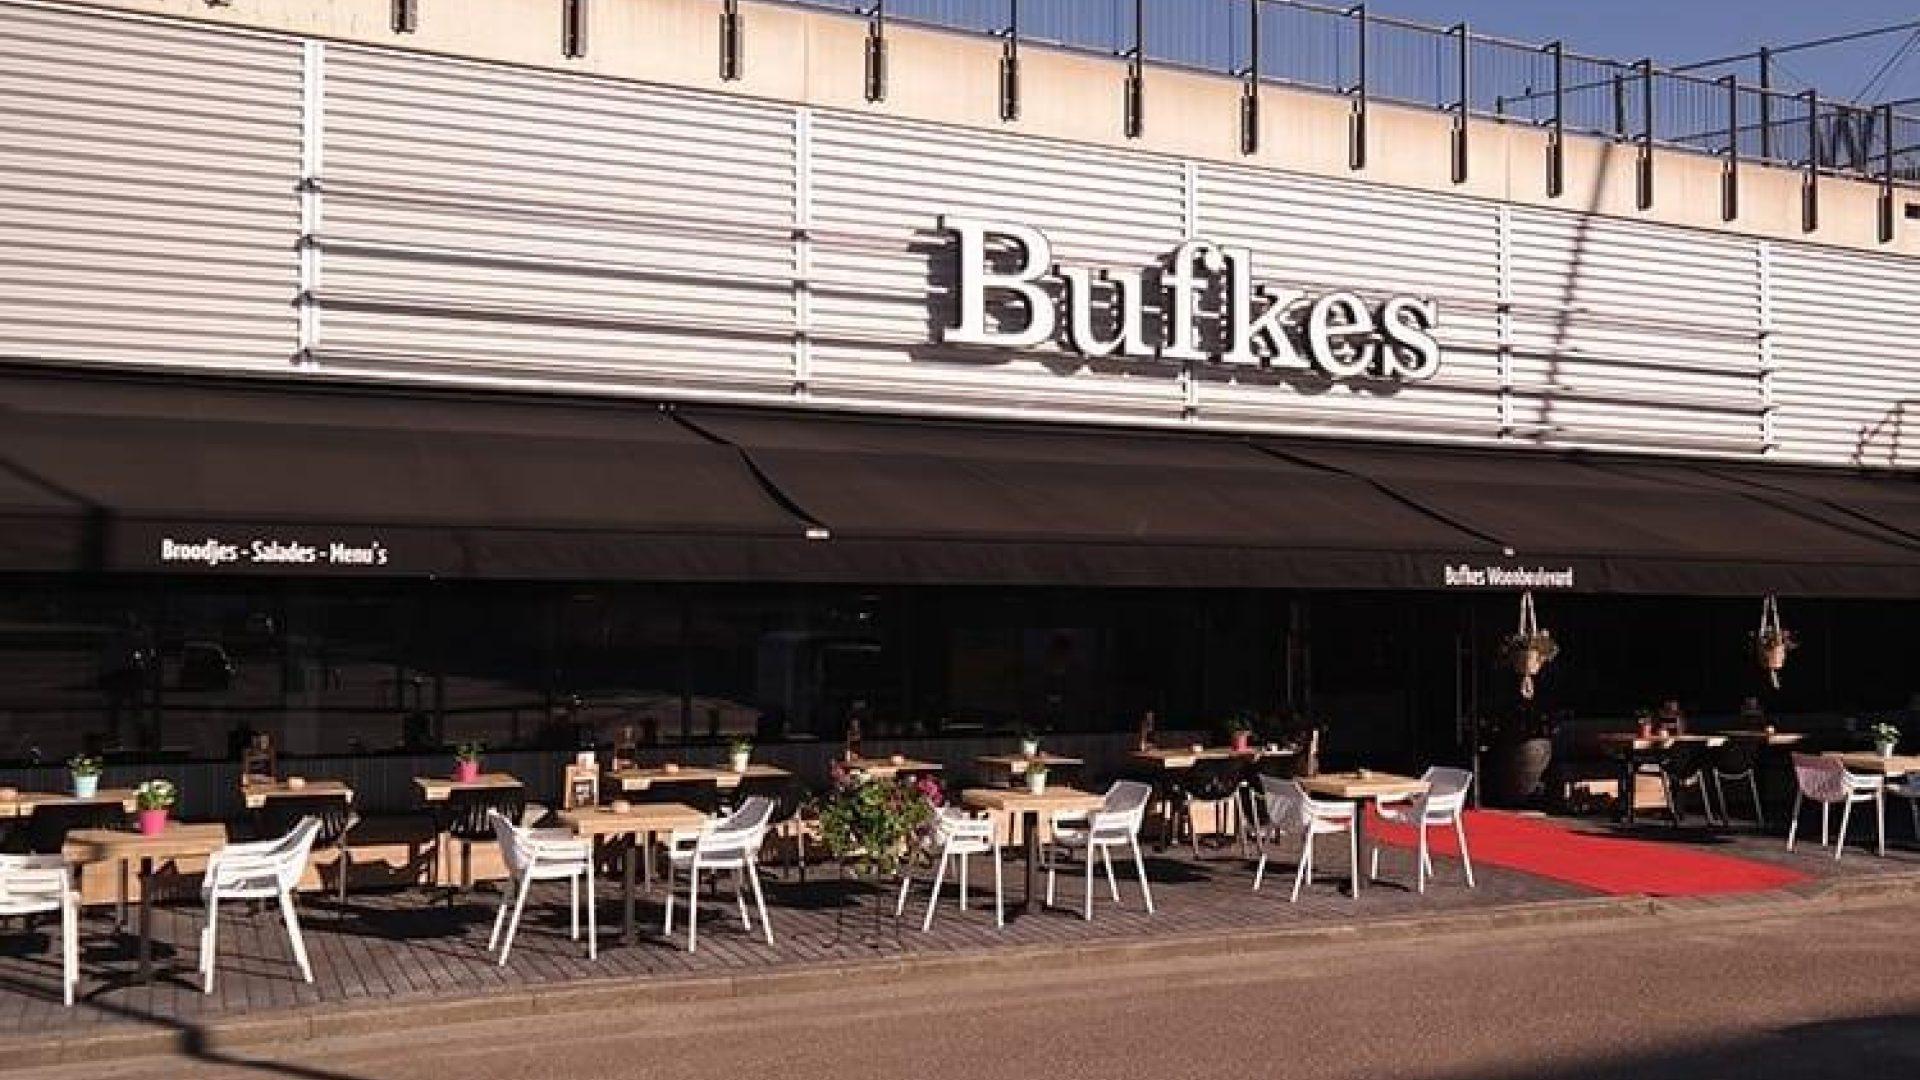 Bufkes (Woonboulevard)